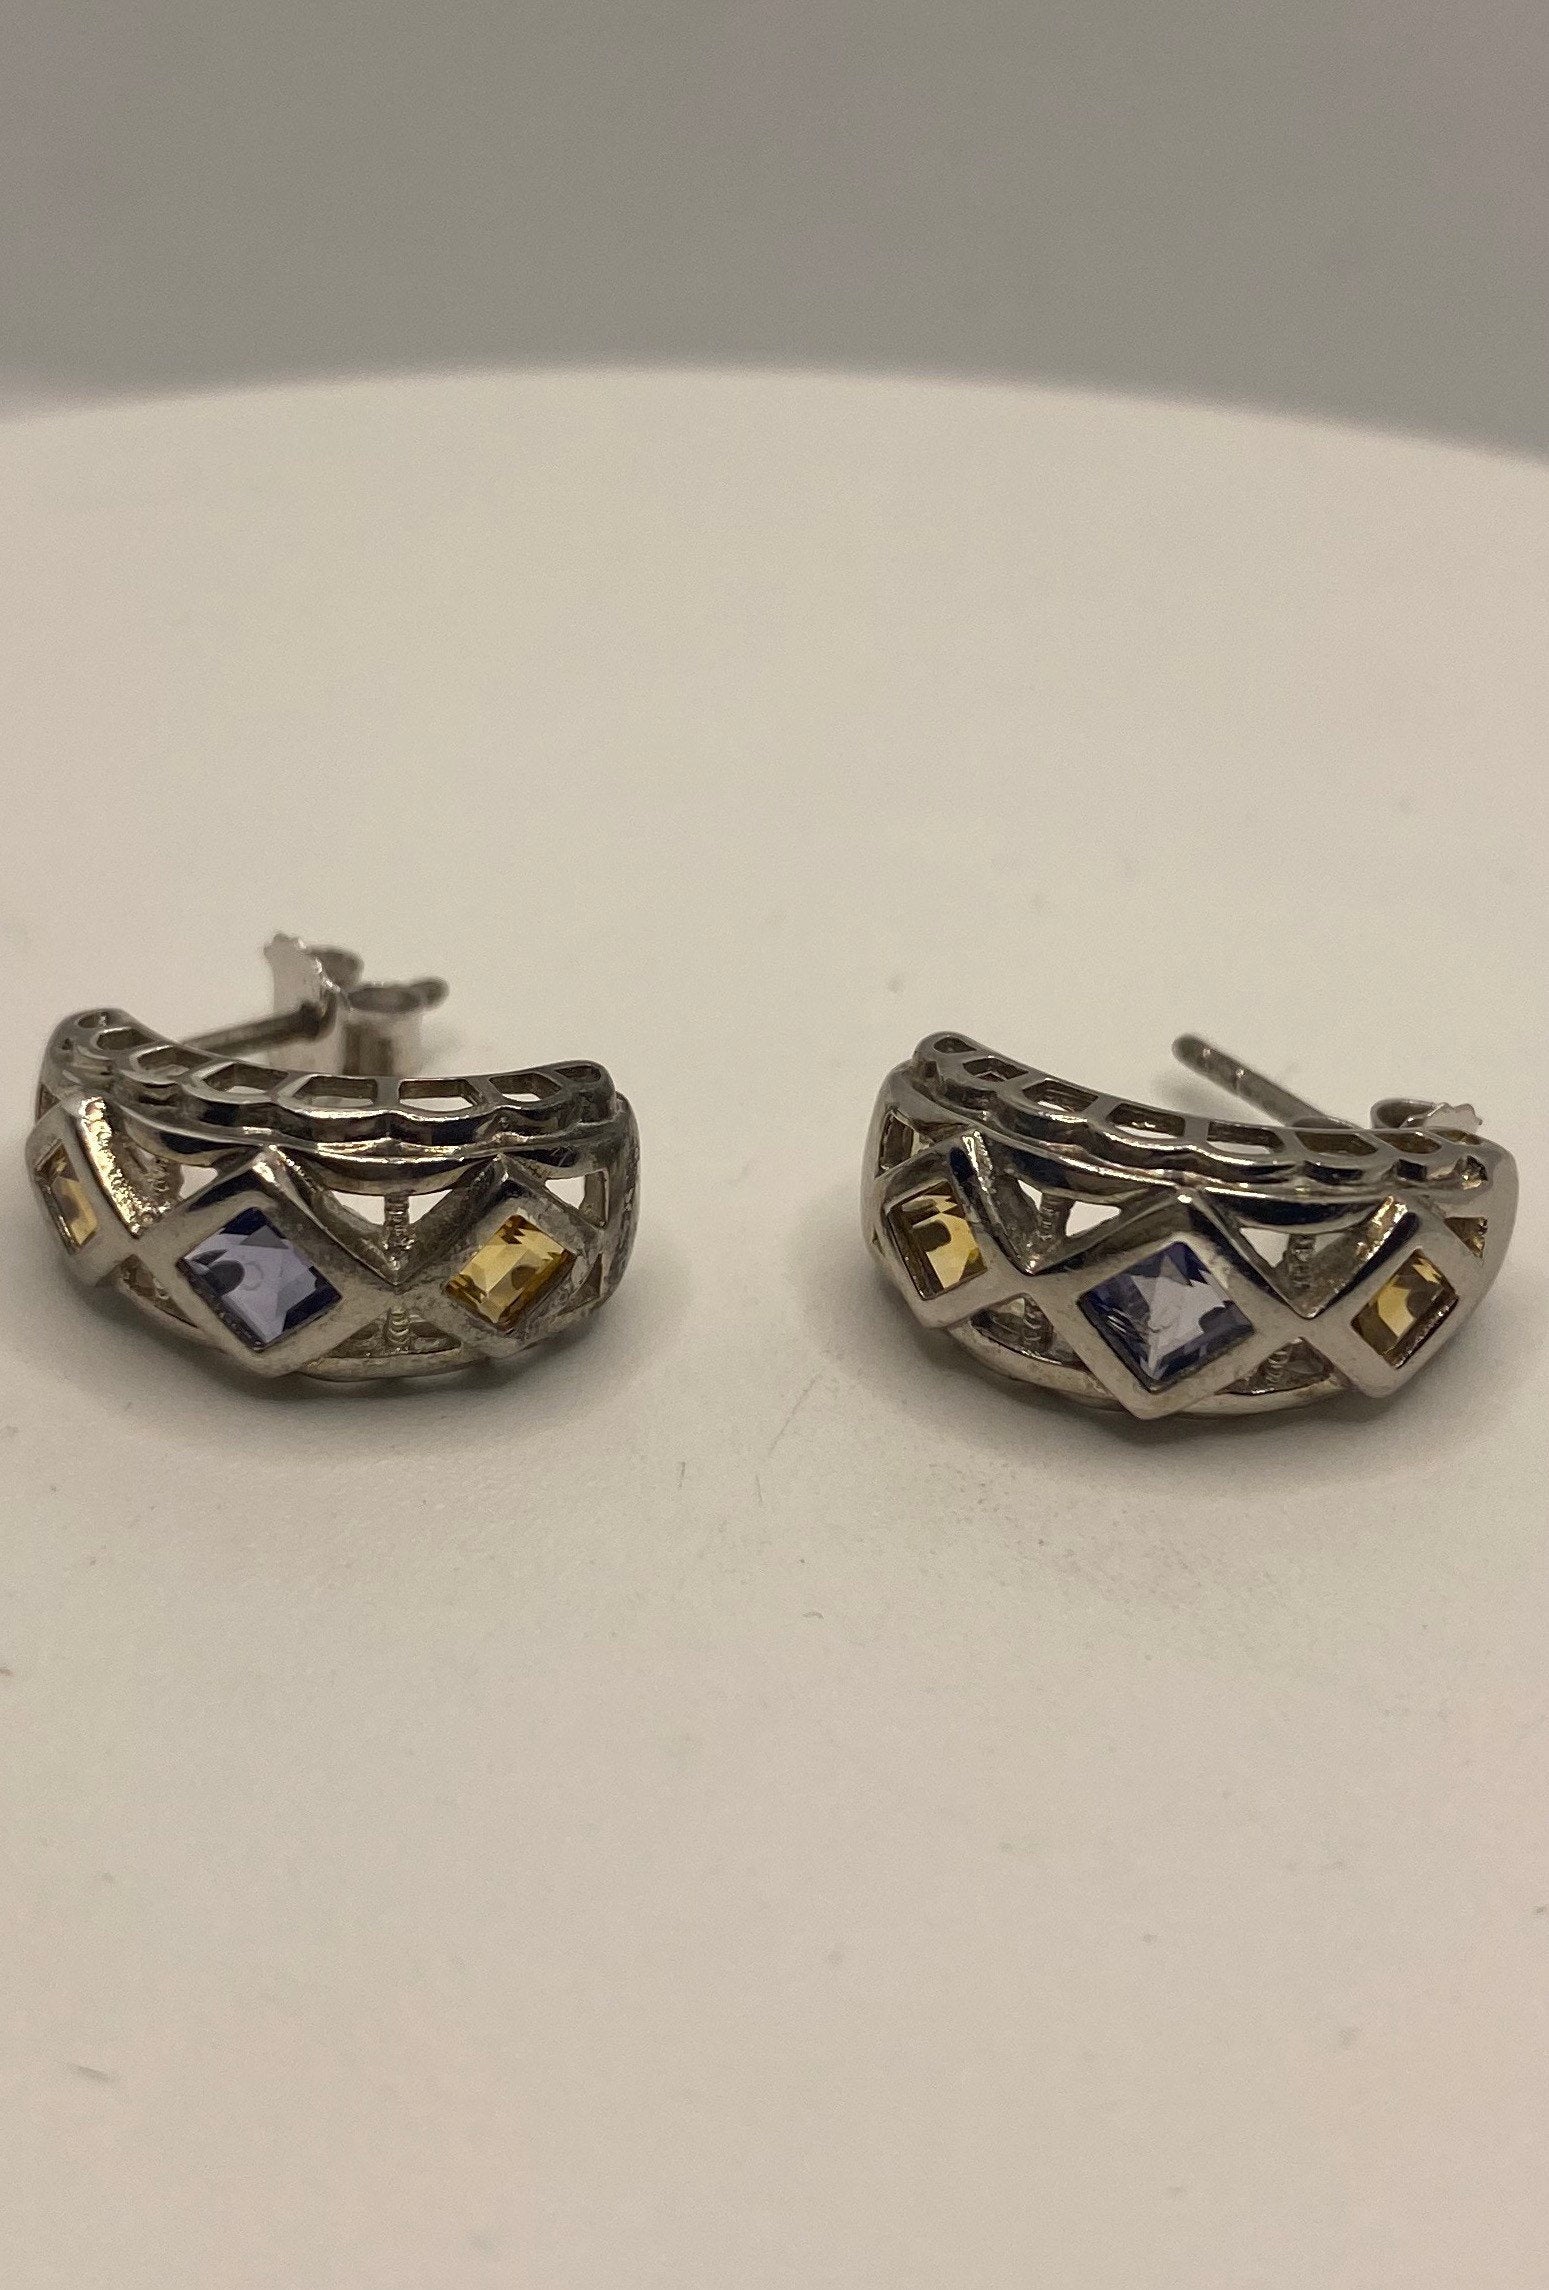 Vintage Citrine Blue Iolite Earrings 925 Sterling Silver Deco